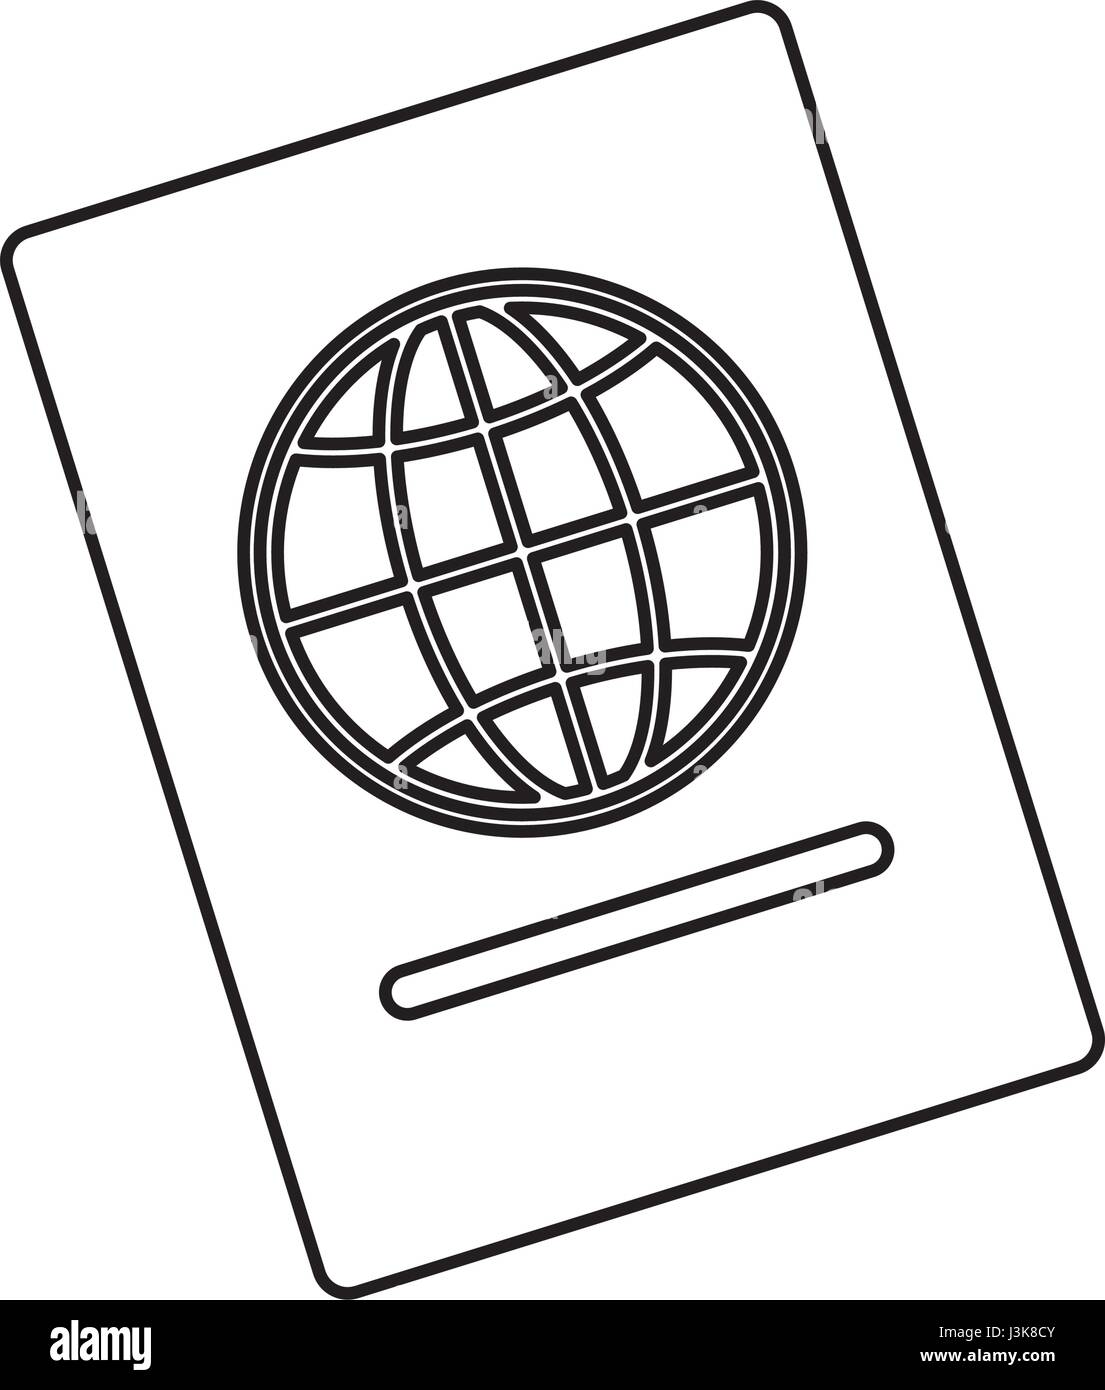 passport icon image Stock Vector